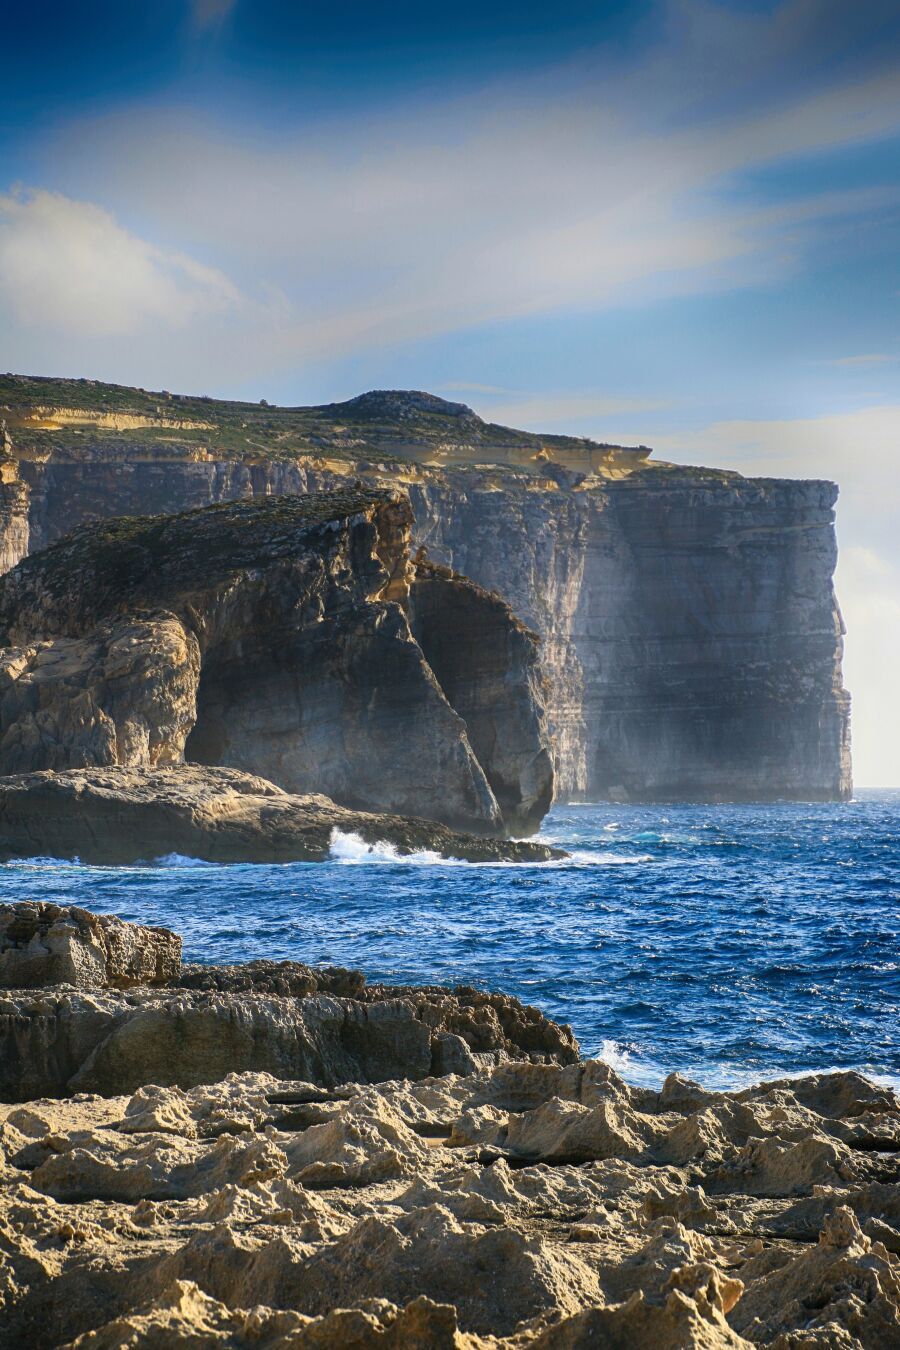 Fungus Rock, Gozo

#Malta #Gozo #mediterraneansea #ocean #island #oceanblu #seascape #photography